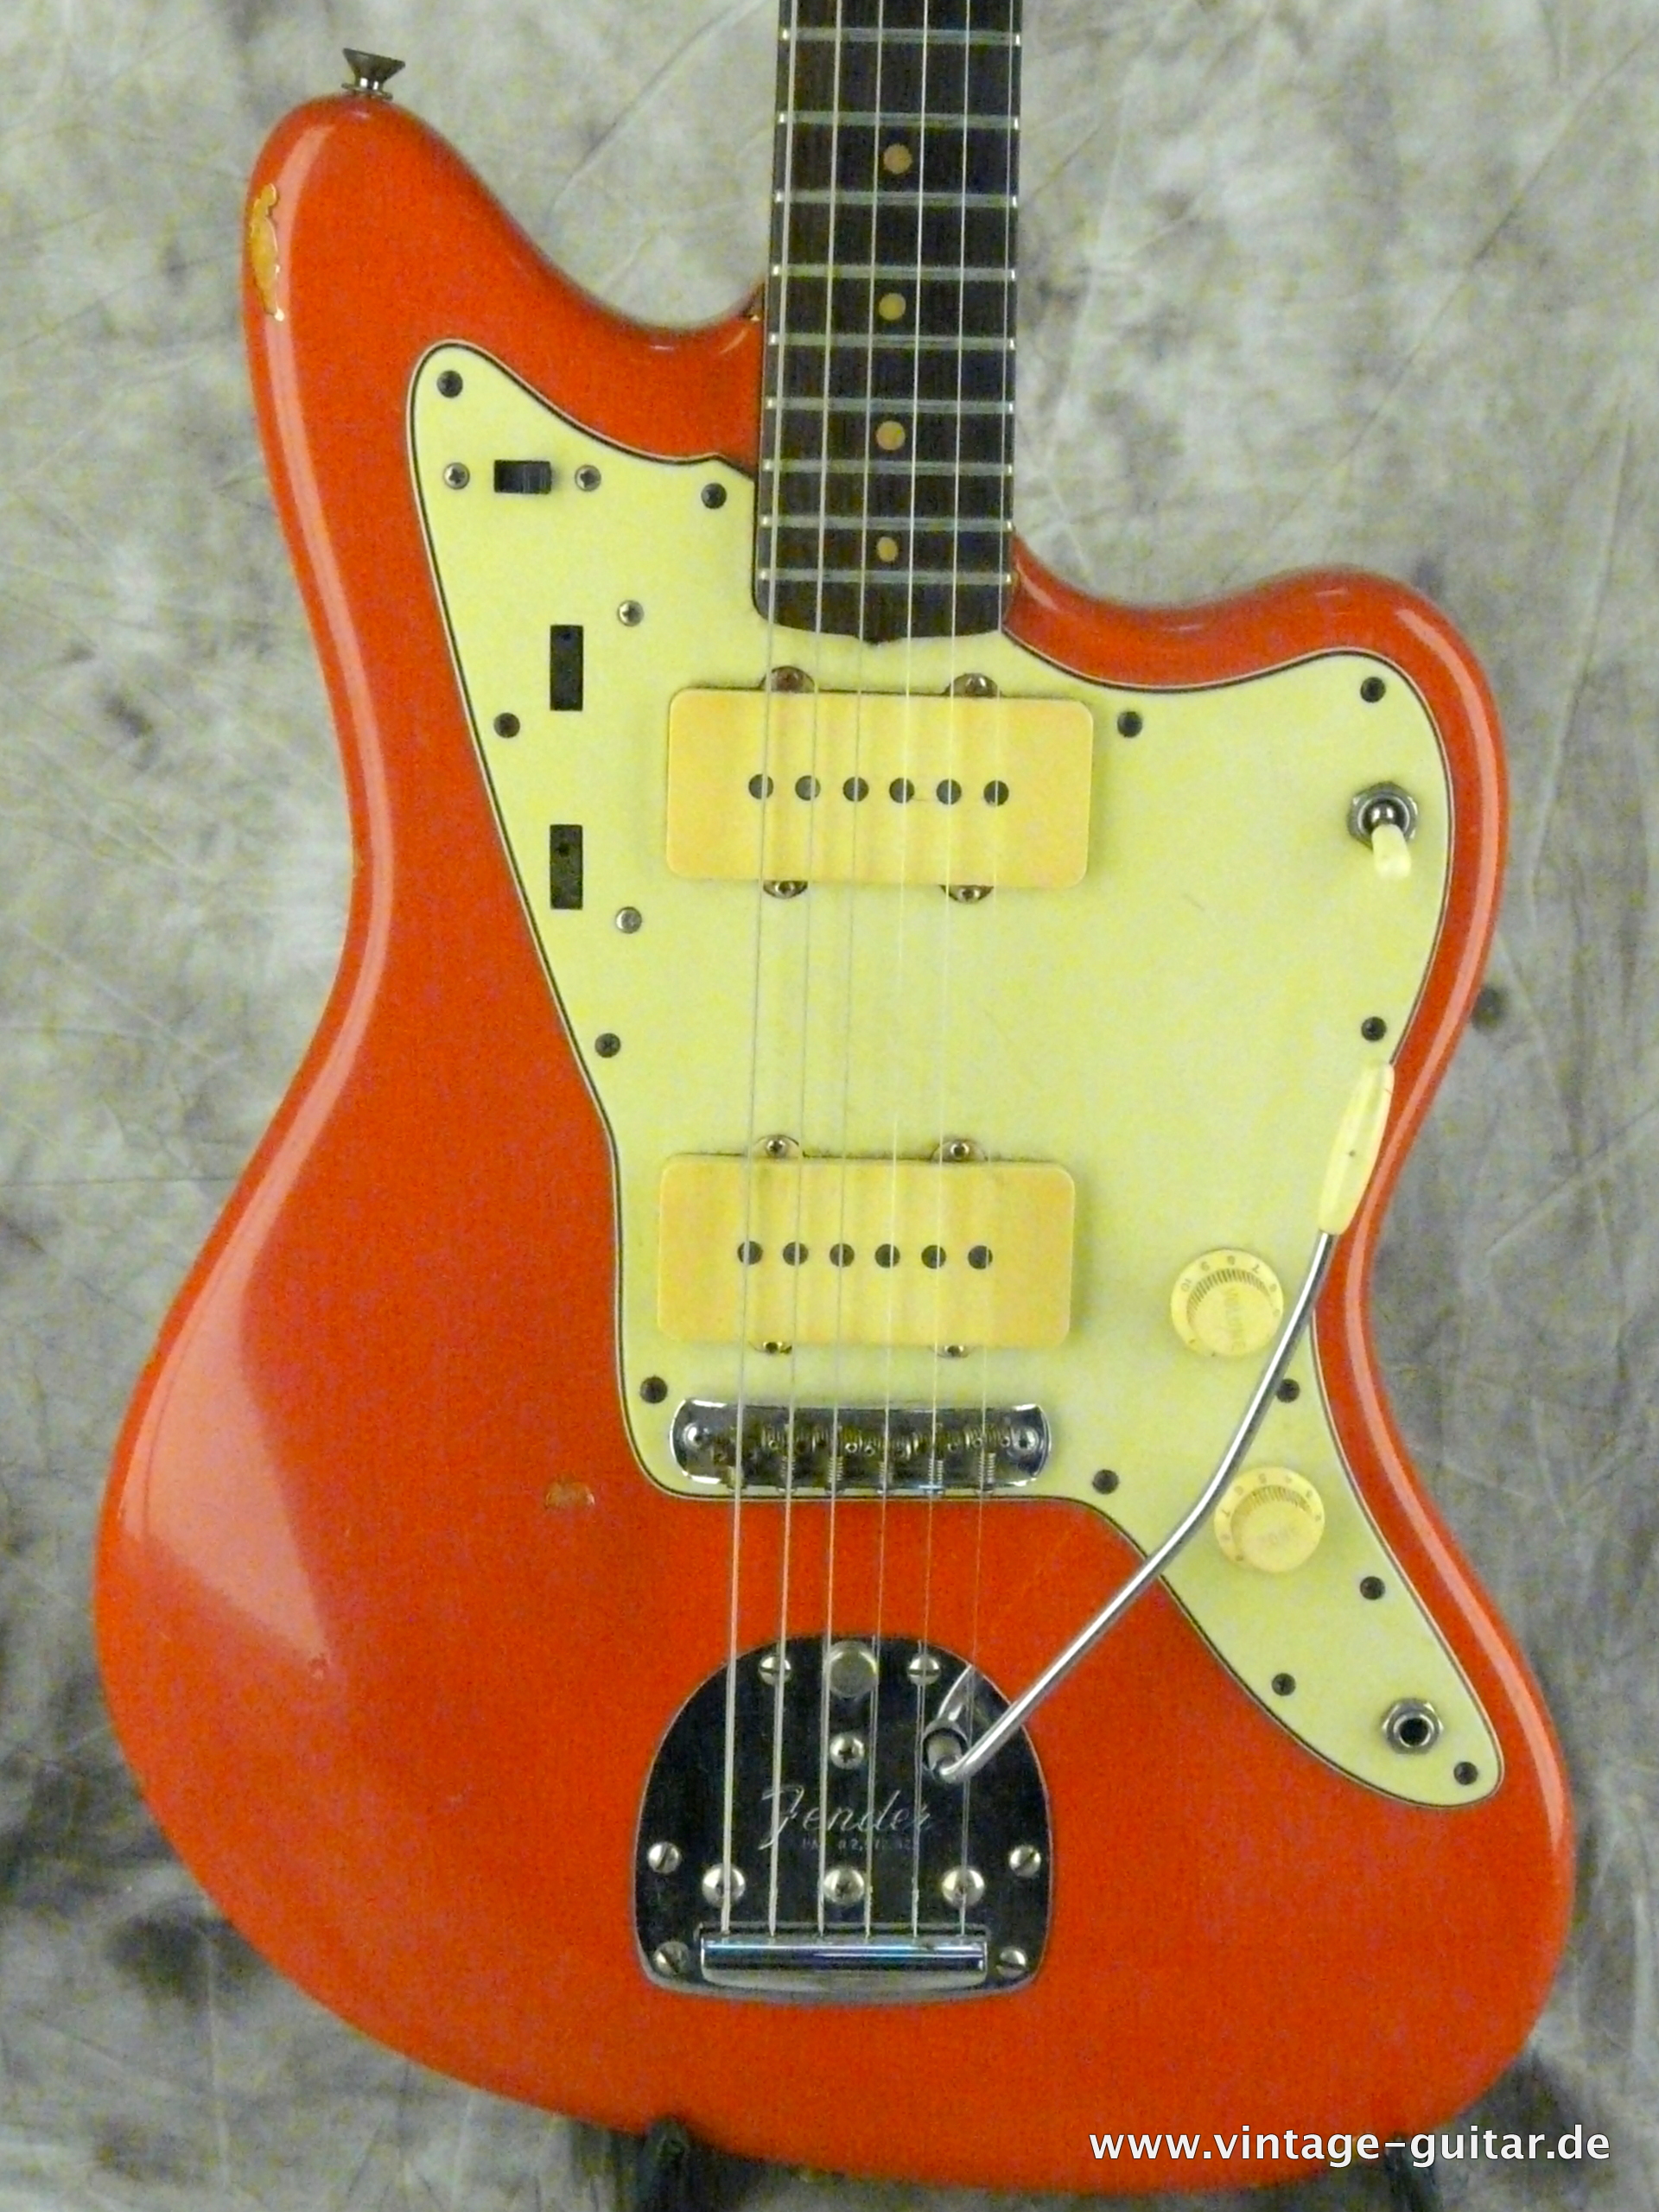 Fender-Jazzmaster-1964-refinished-fiesta-red-002.JPG